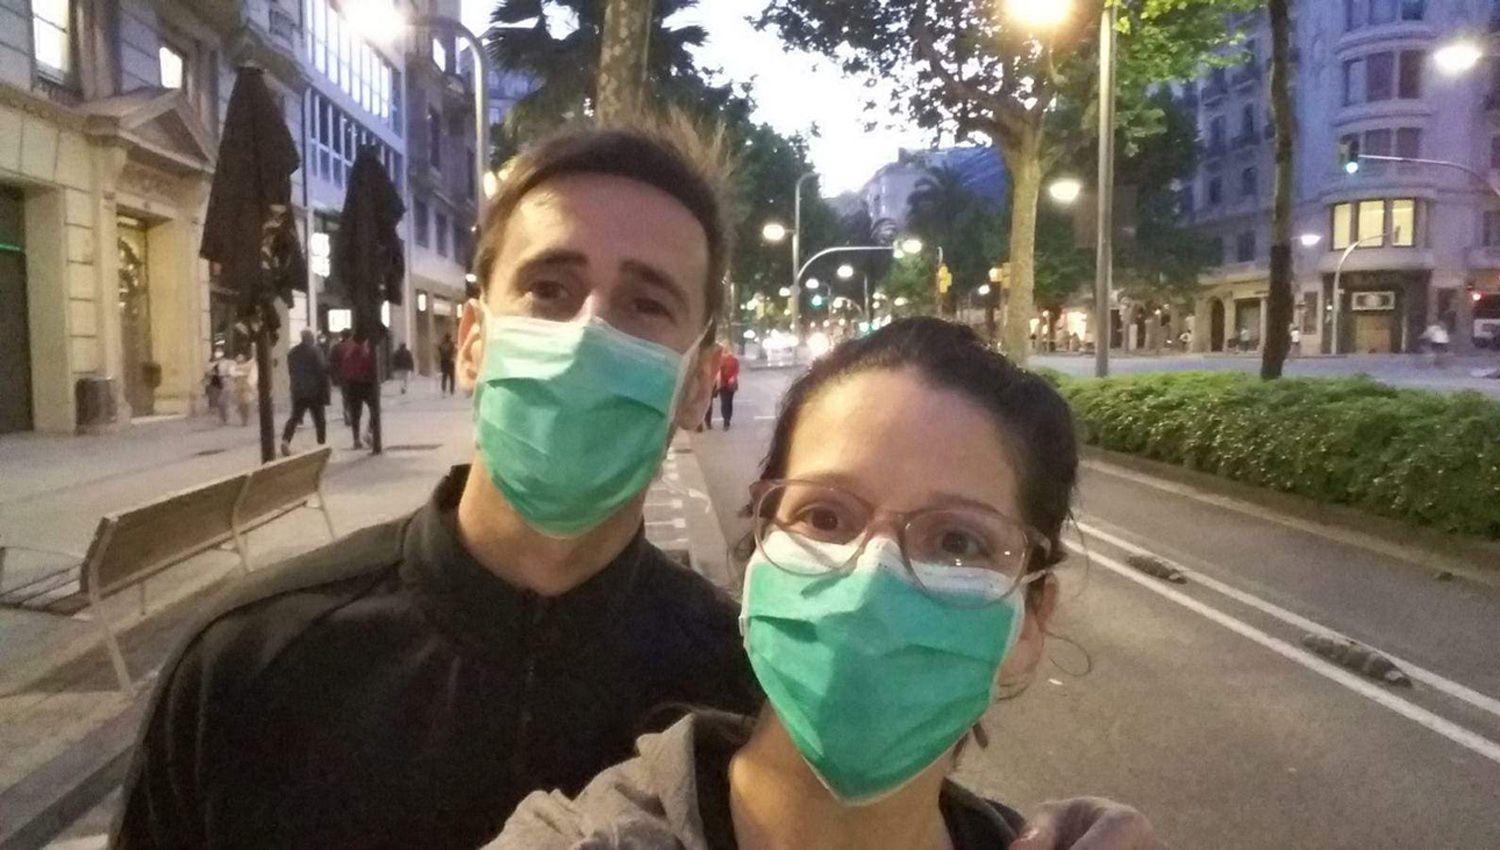 VIDEO  Milagros Juaacuterez la bioquiacutemica que se fue a Avintildeoacuten y ahora vive con su pareja en Barcelona